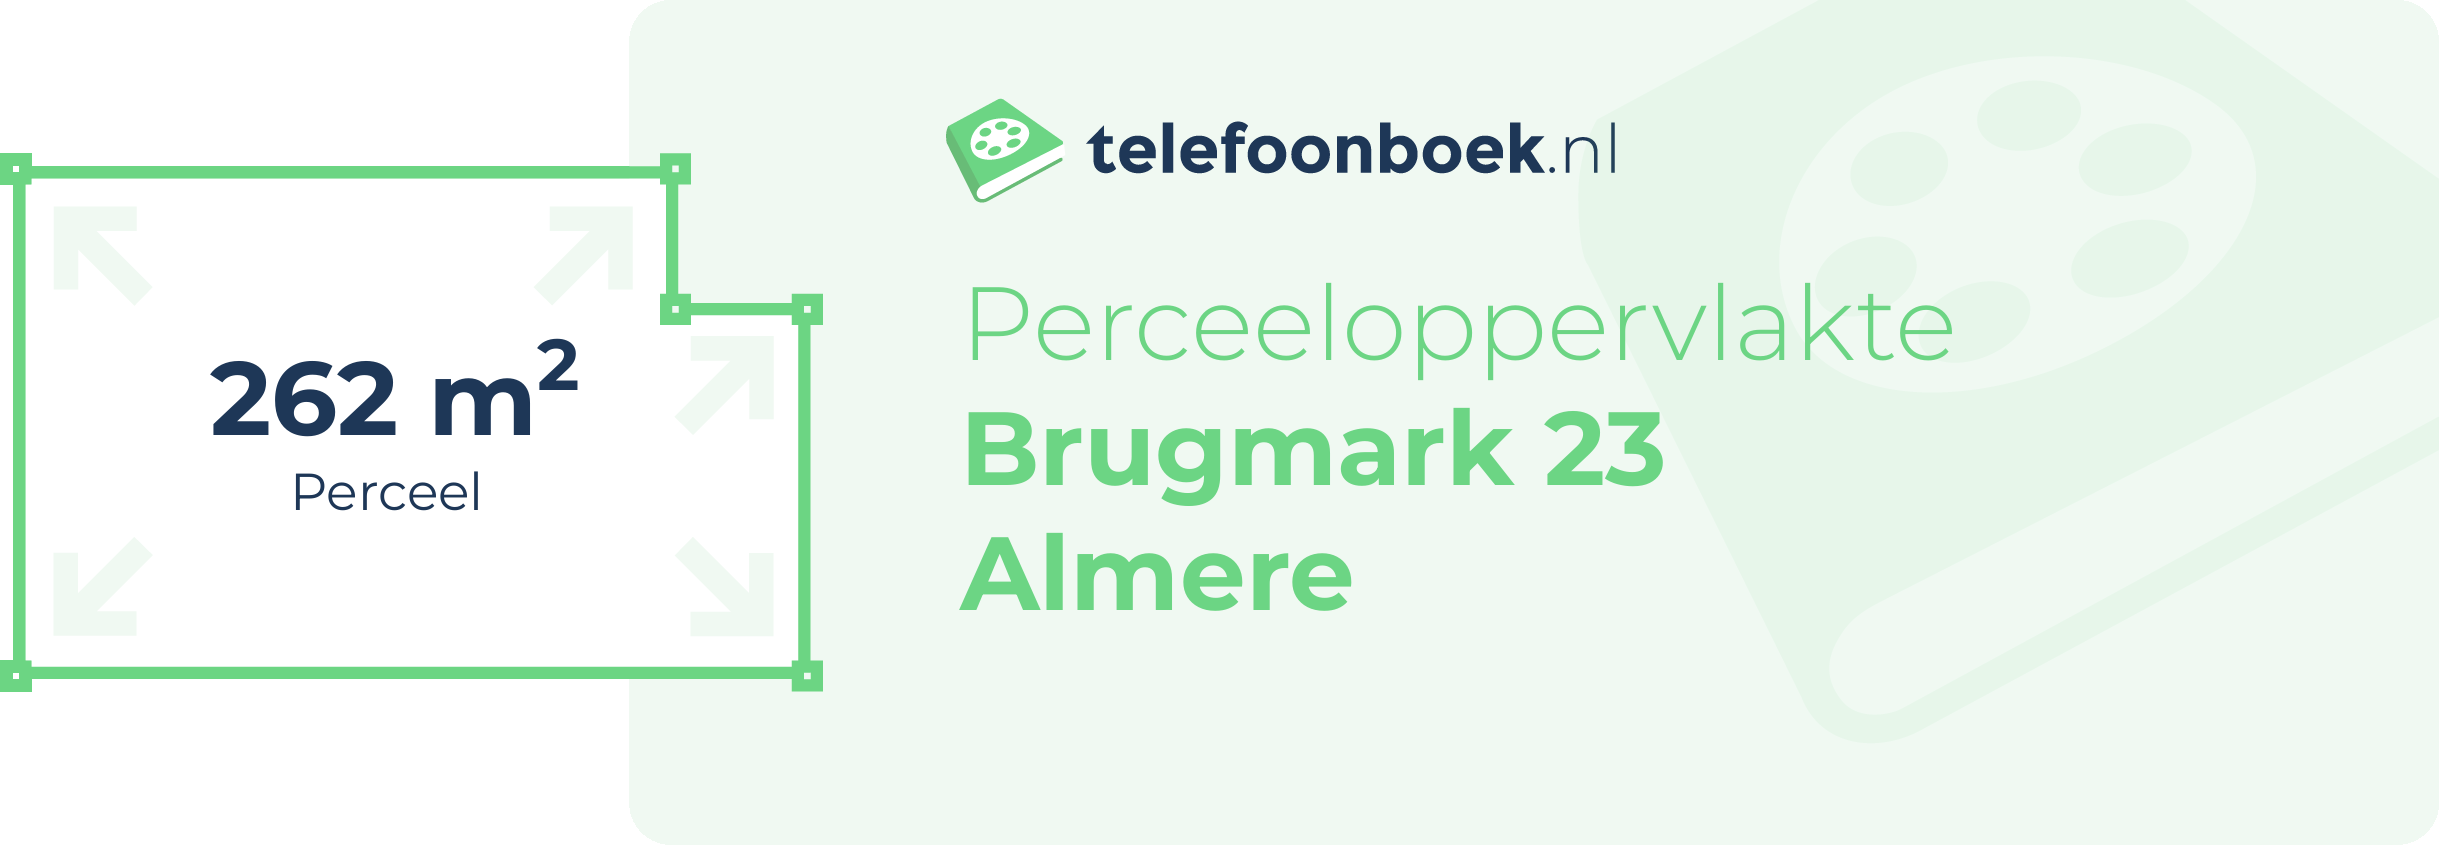 Perceeloppervlakte Brugmark 23 Almere